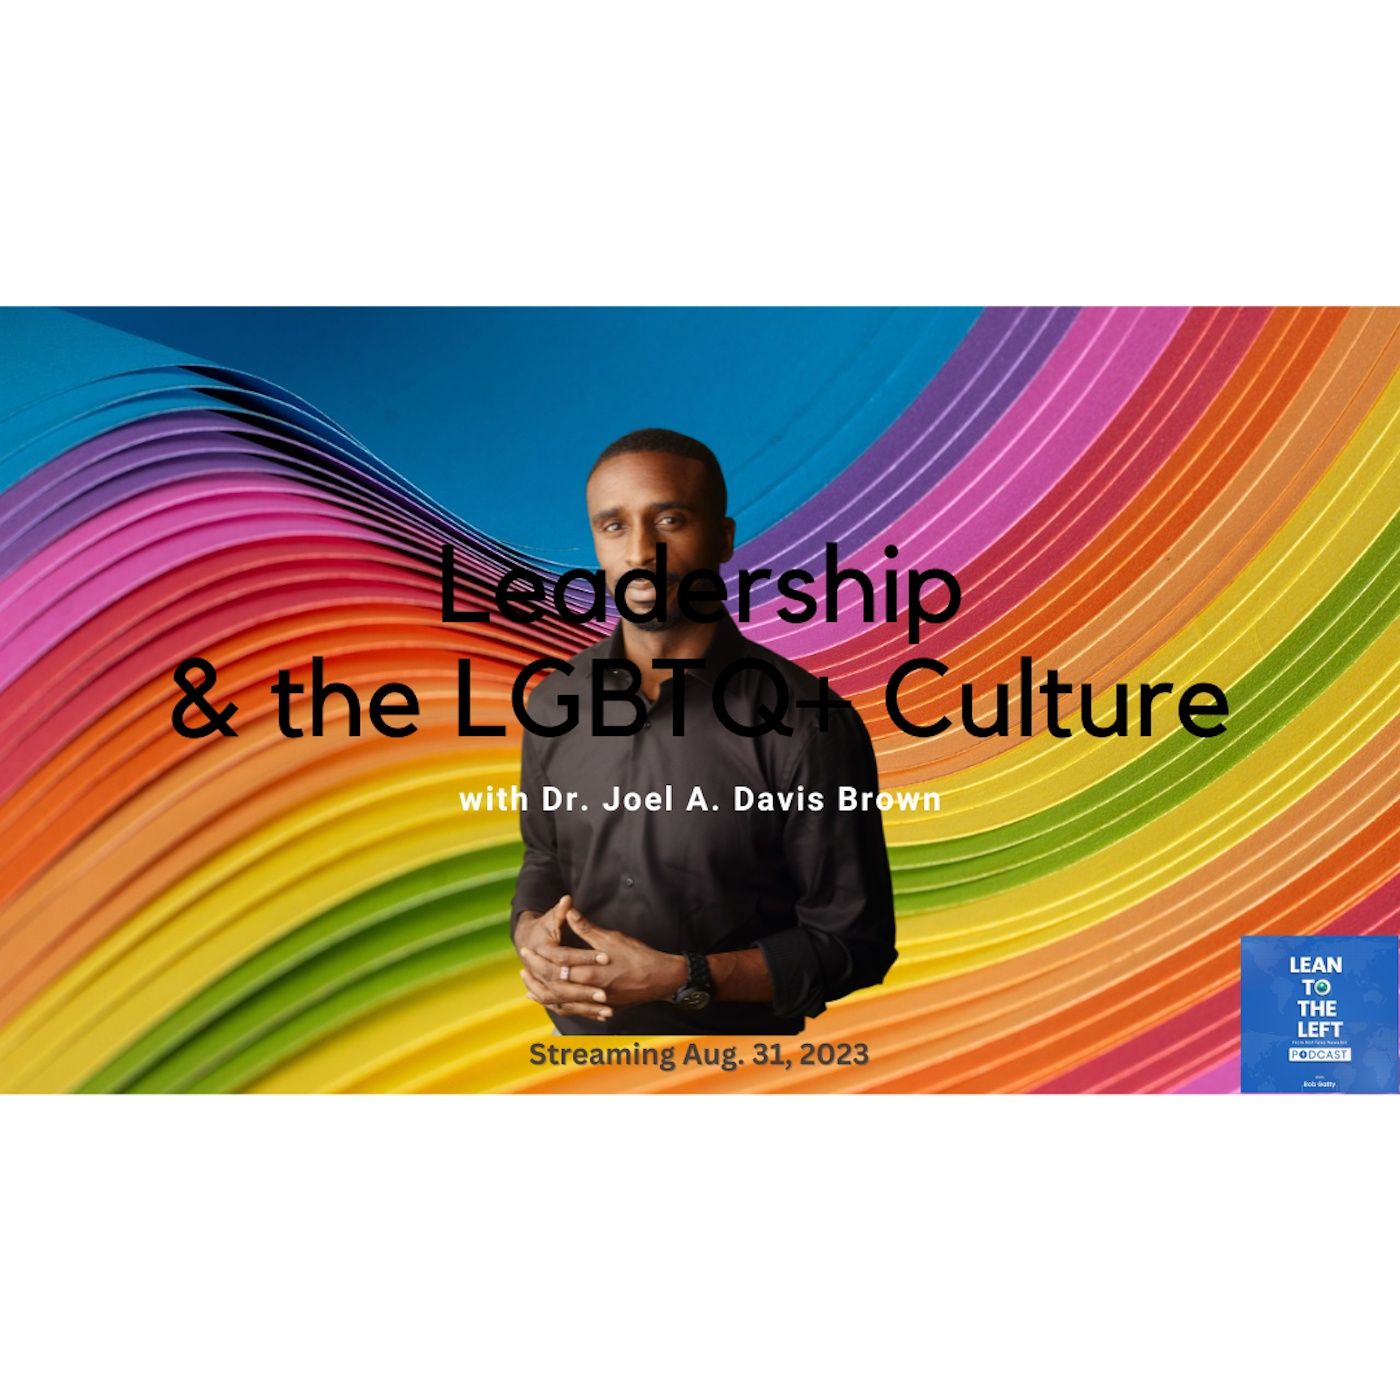 Joel A. Davis Brown, LGBTQ+ Leadership